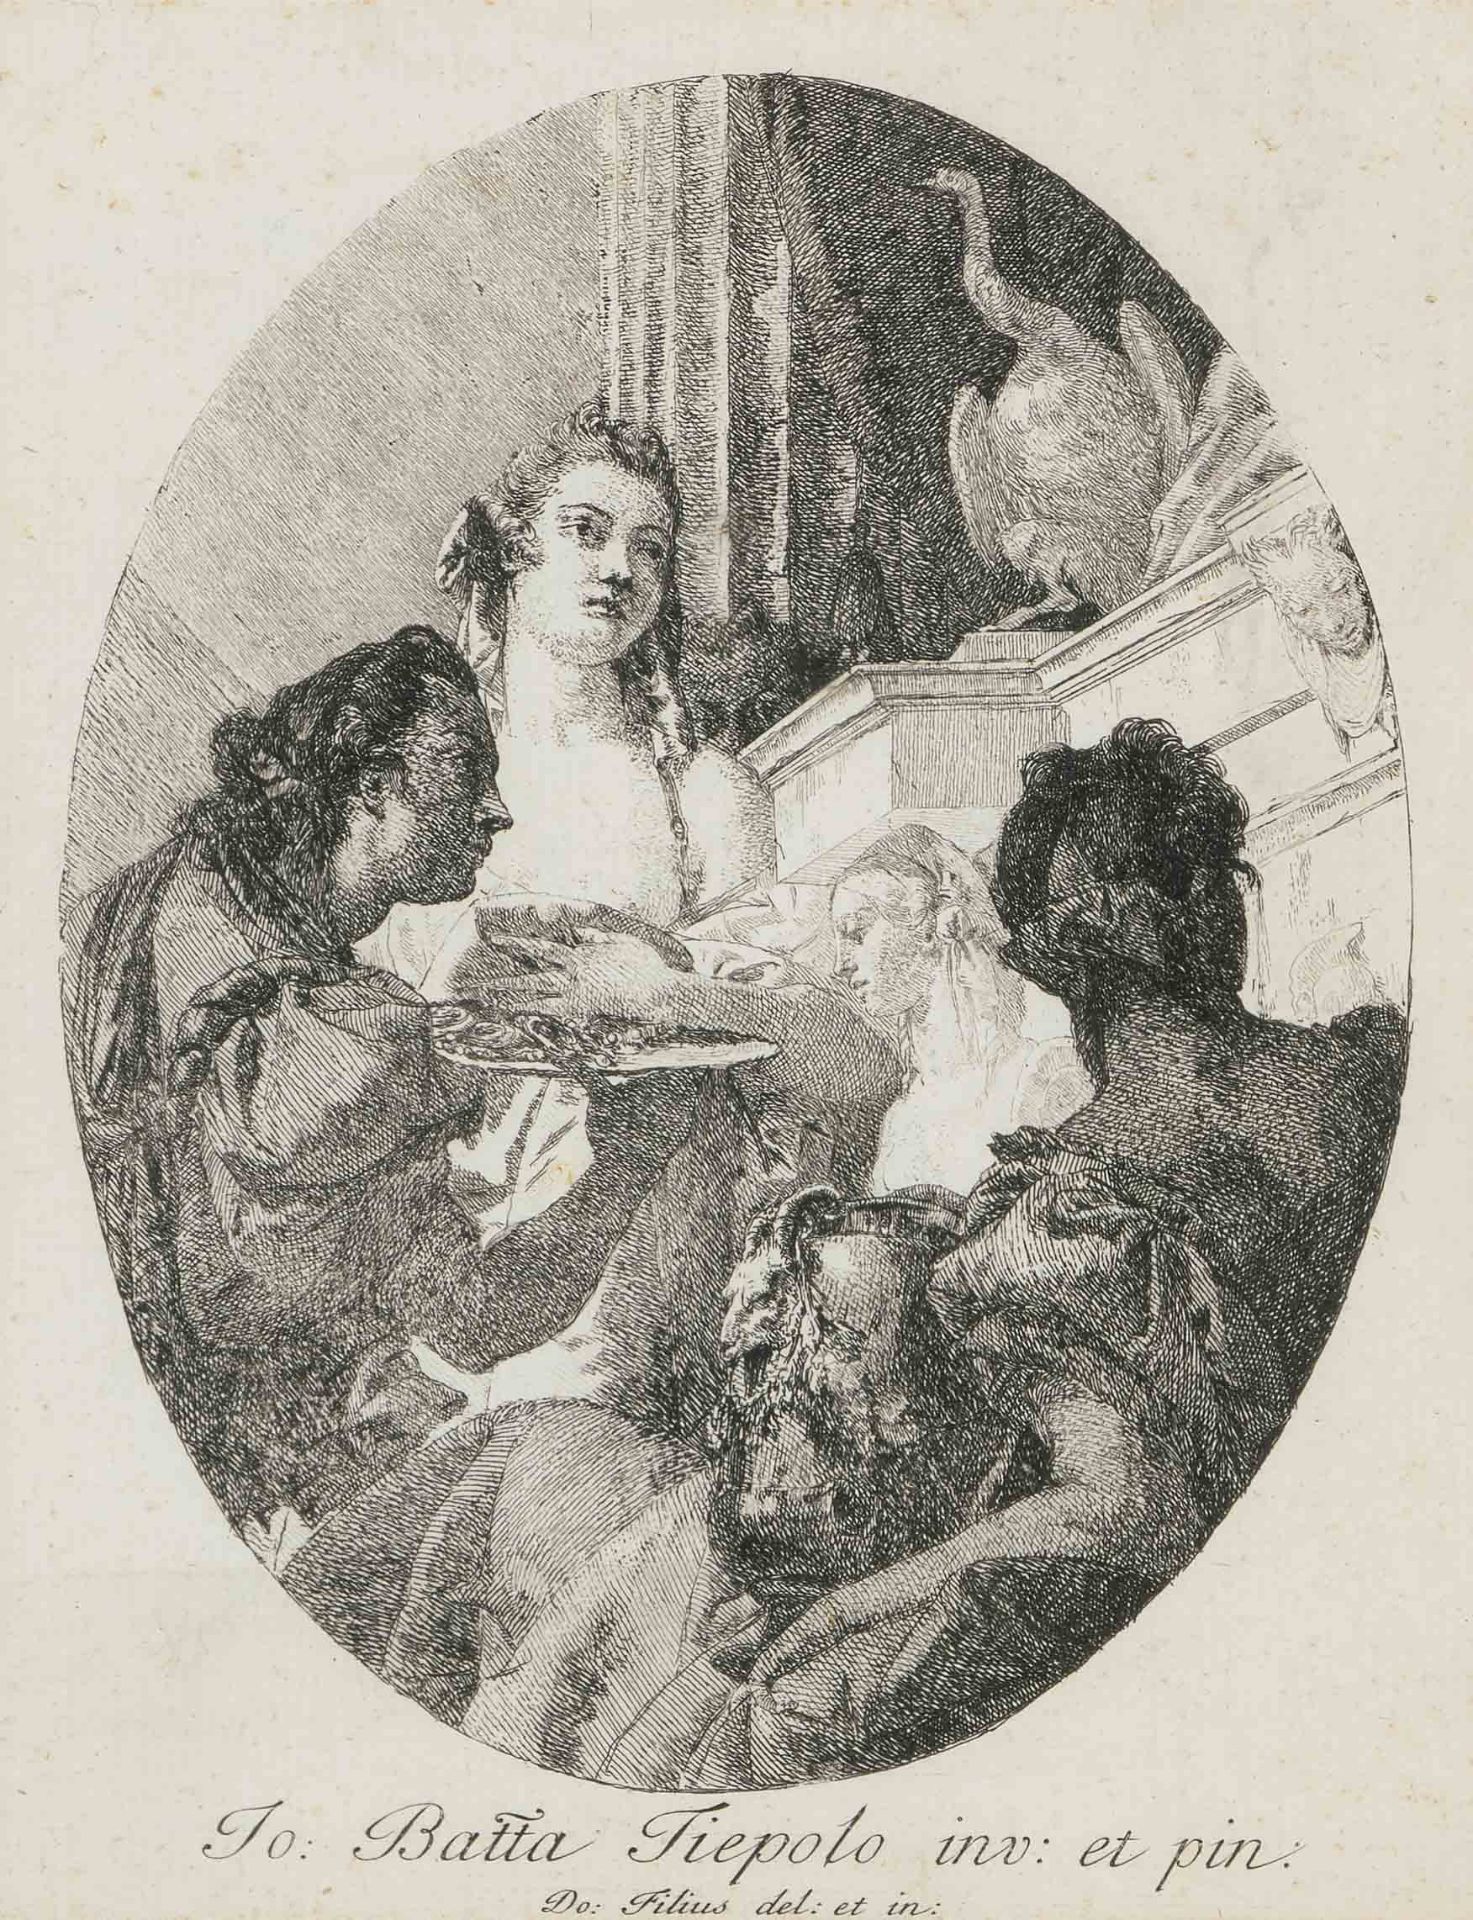 Tiepolo, Giovanni Domenico